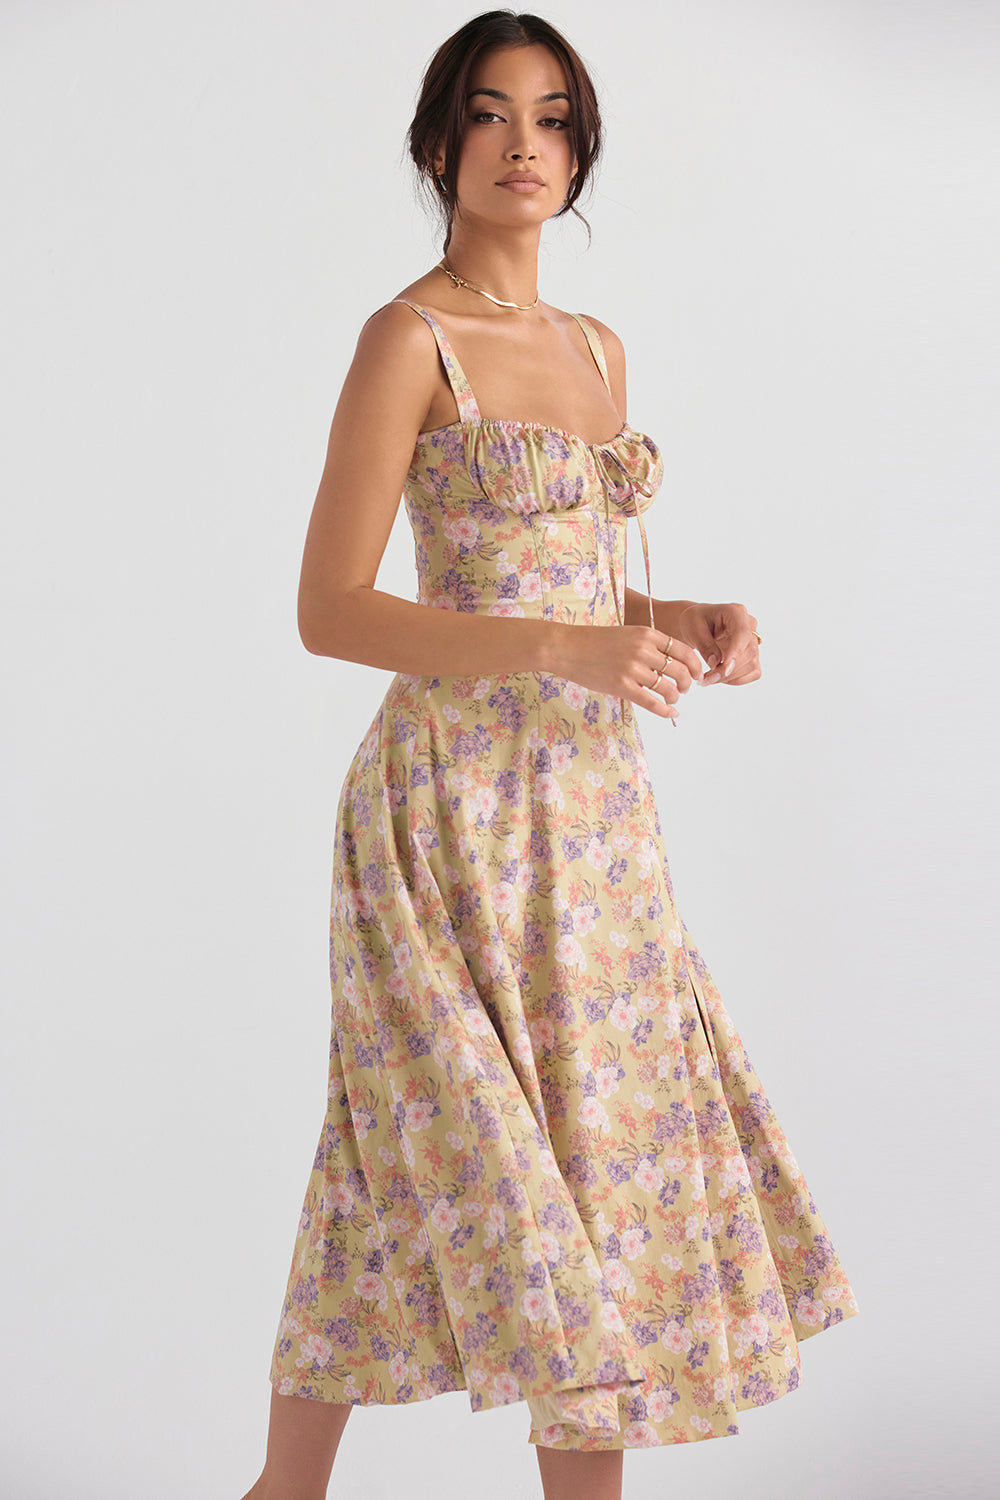 Floral Bustier Midriff Waist Shaper Dress Comfy Bustier Sundress